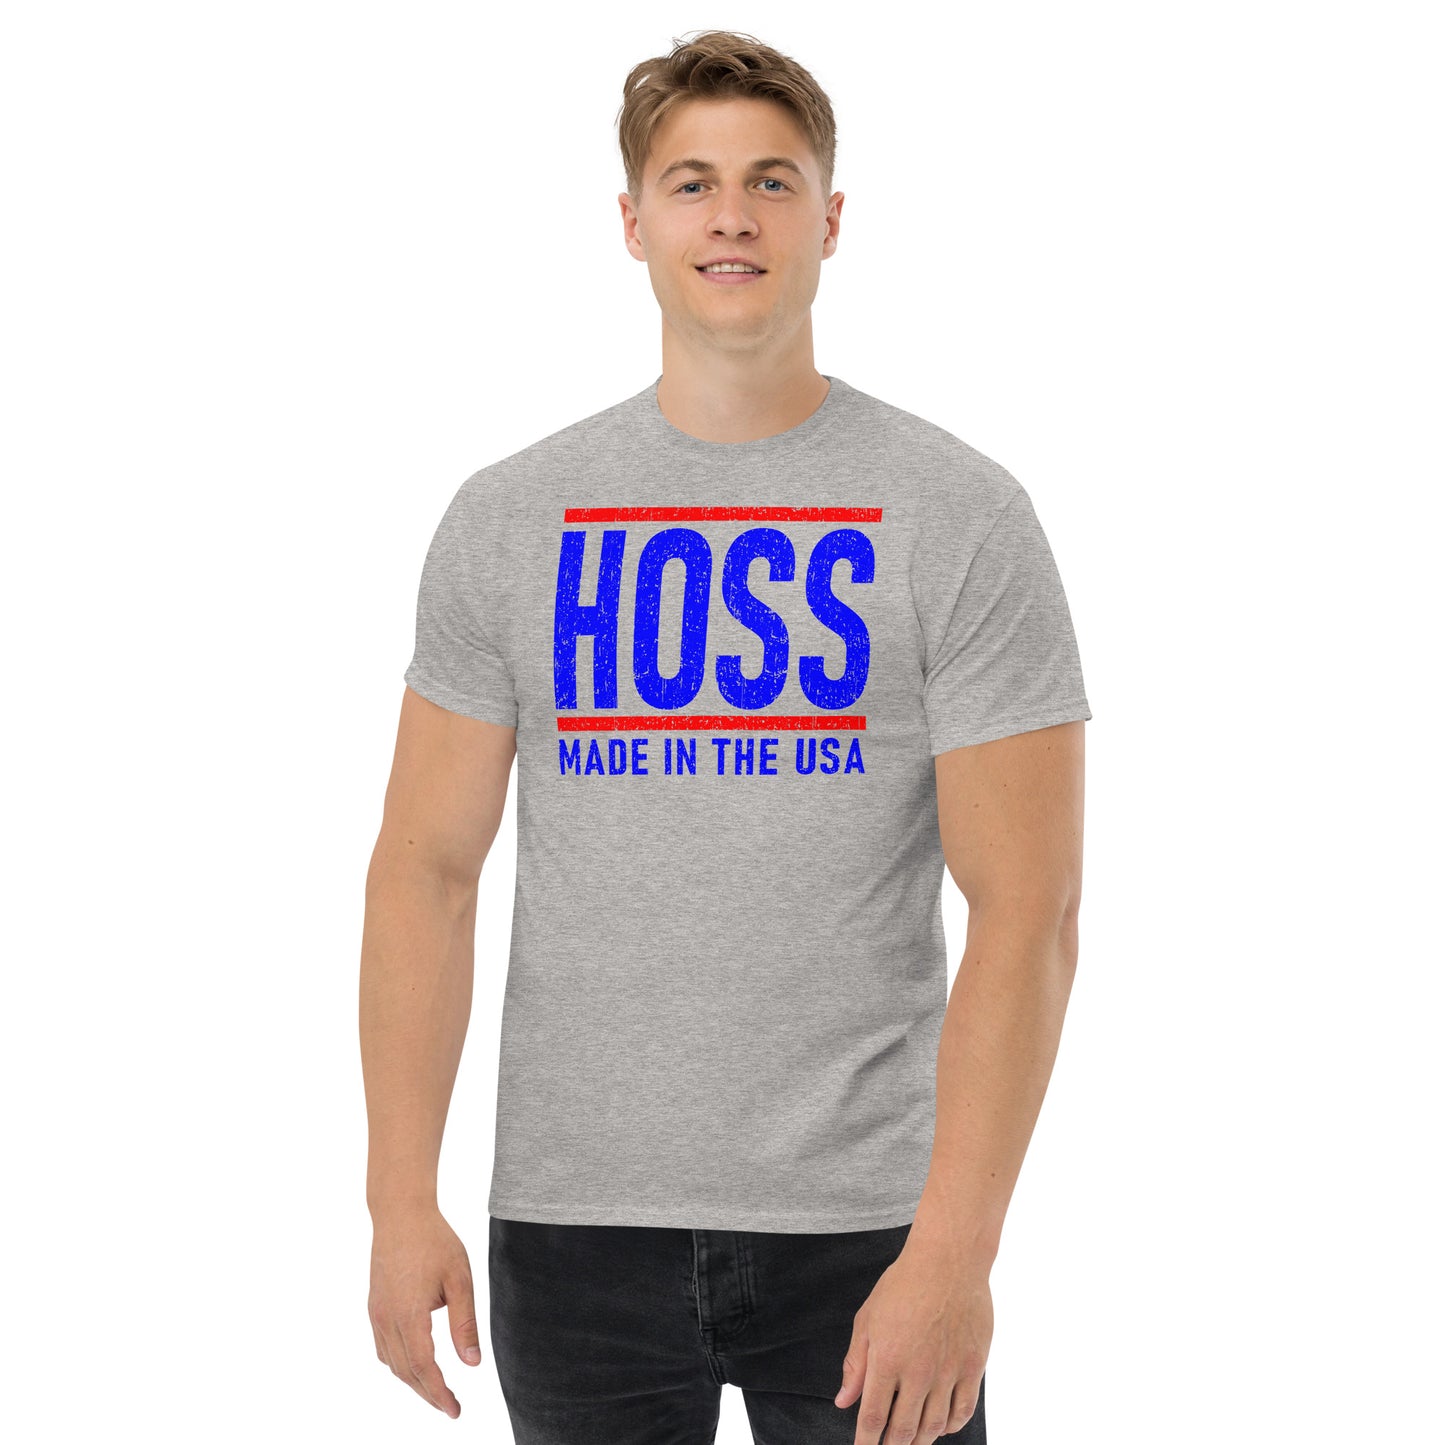 Hoss men's sport grey t-shirt